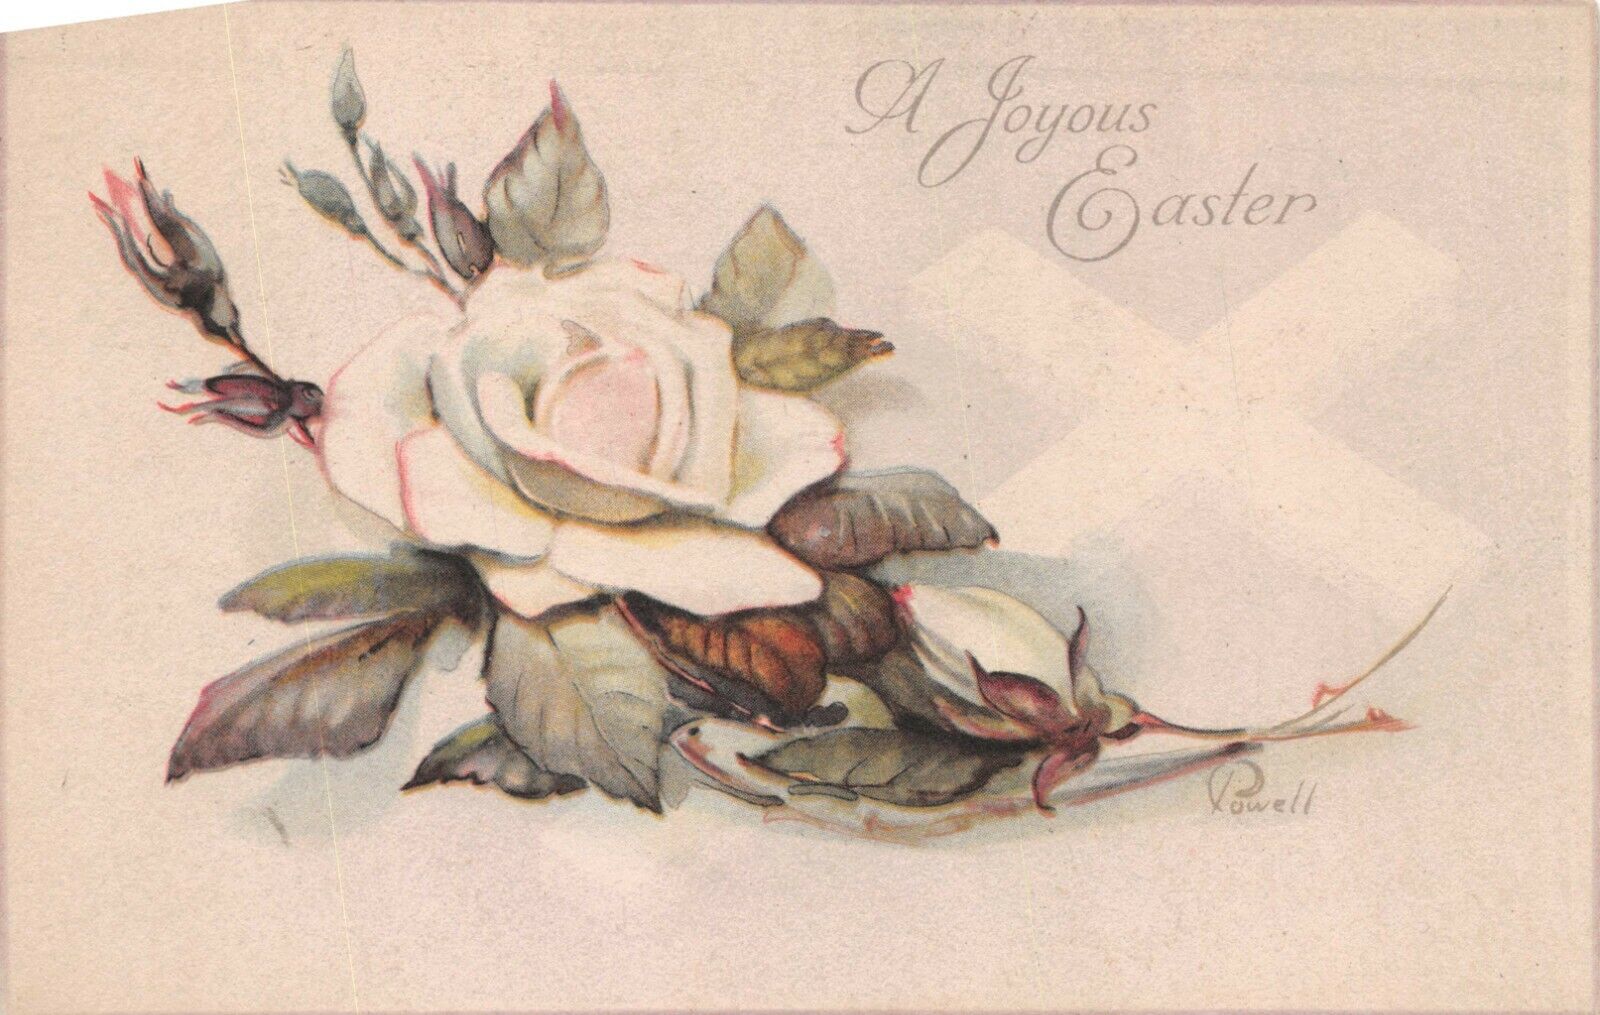 Vtg. c1919 A Joyous Easter Powell  White Rose Postcard p892